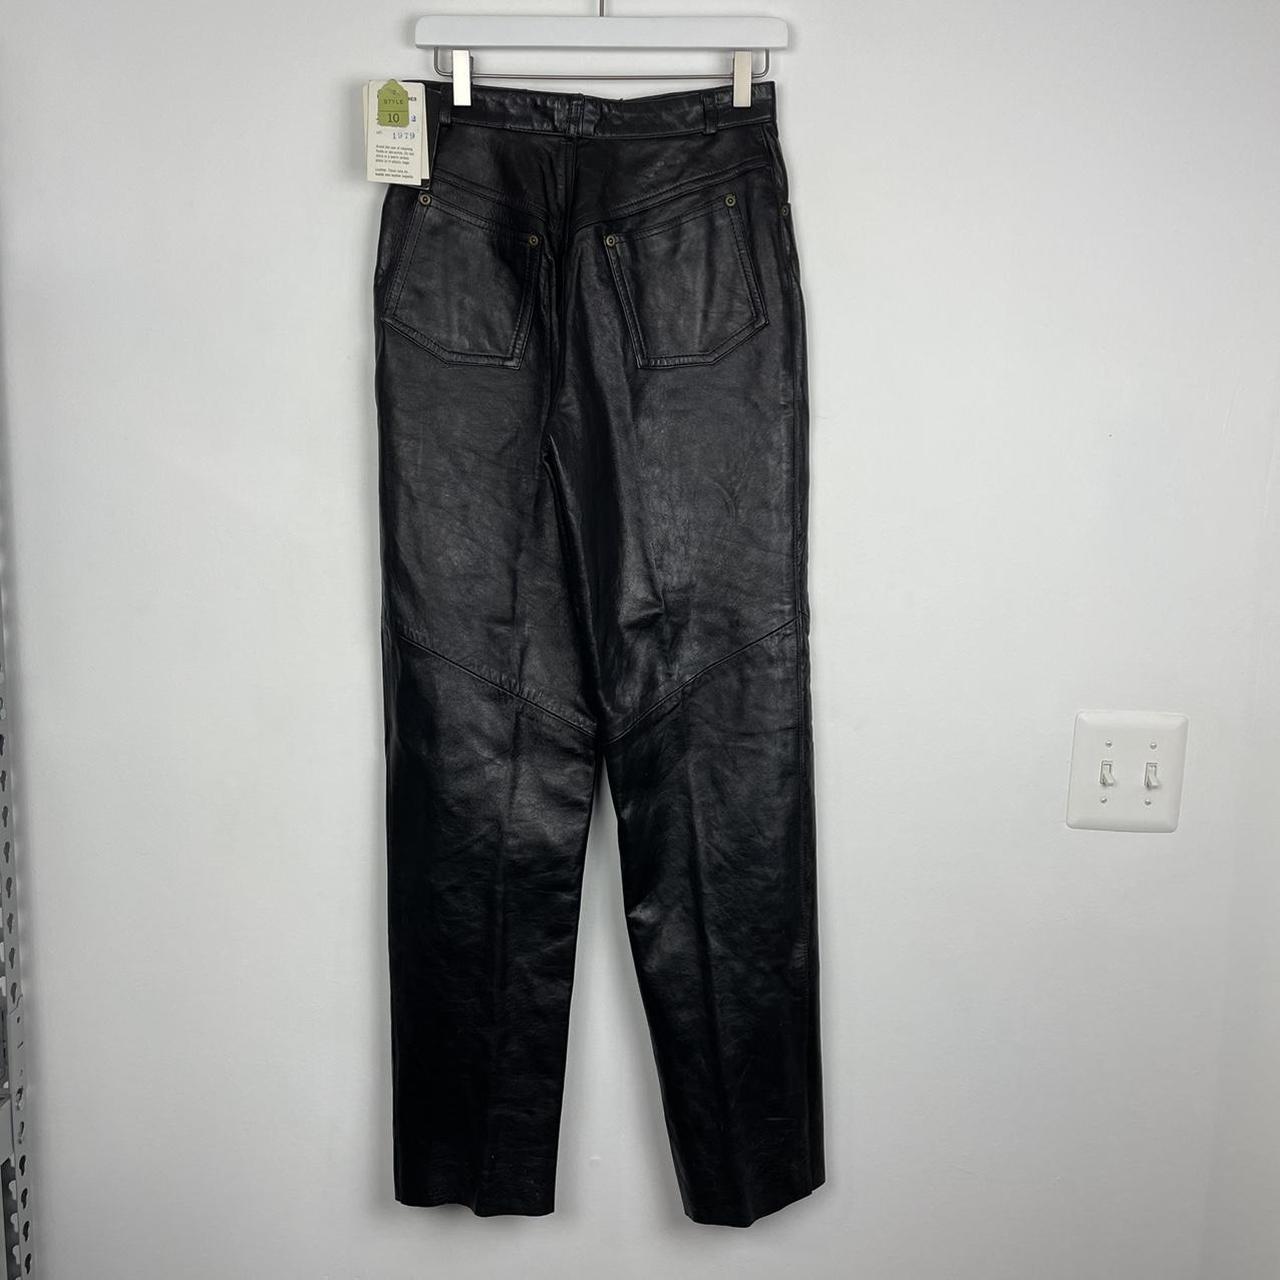 Vintage Christian Dior Black Leather Pants Size 10... - Depop